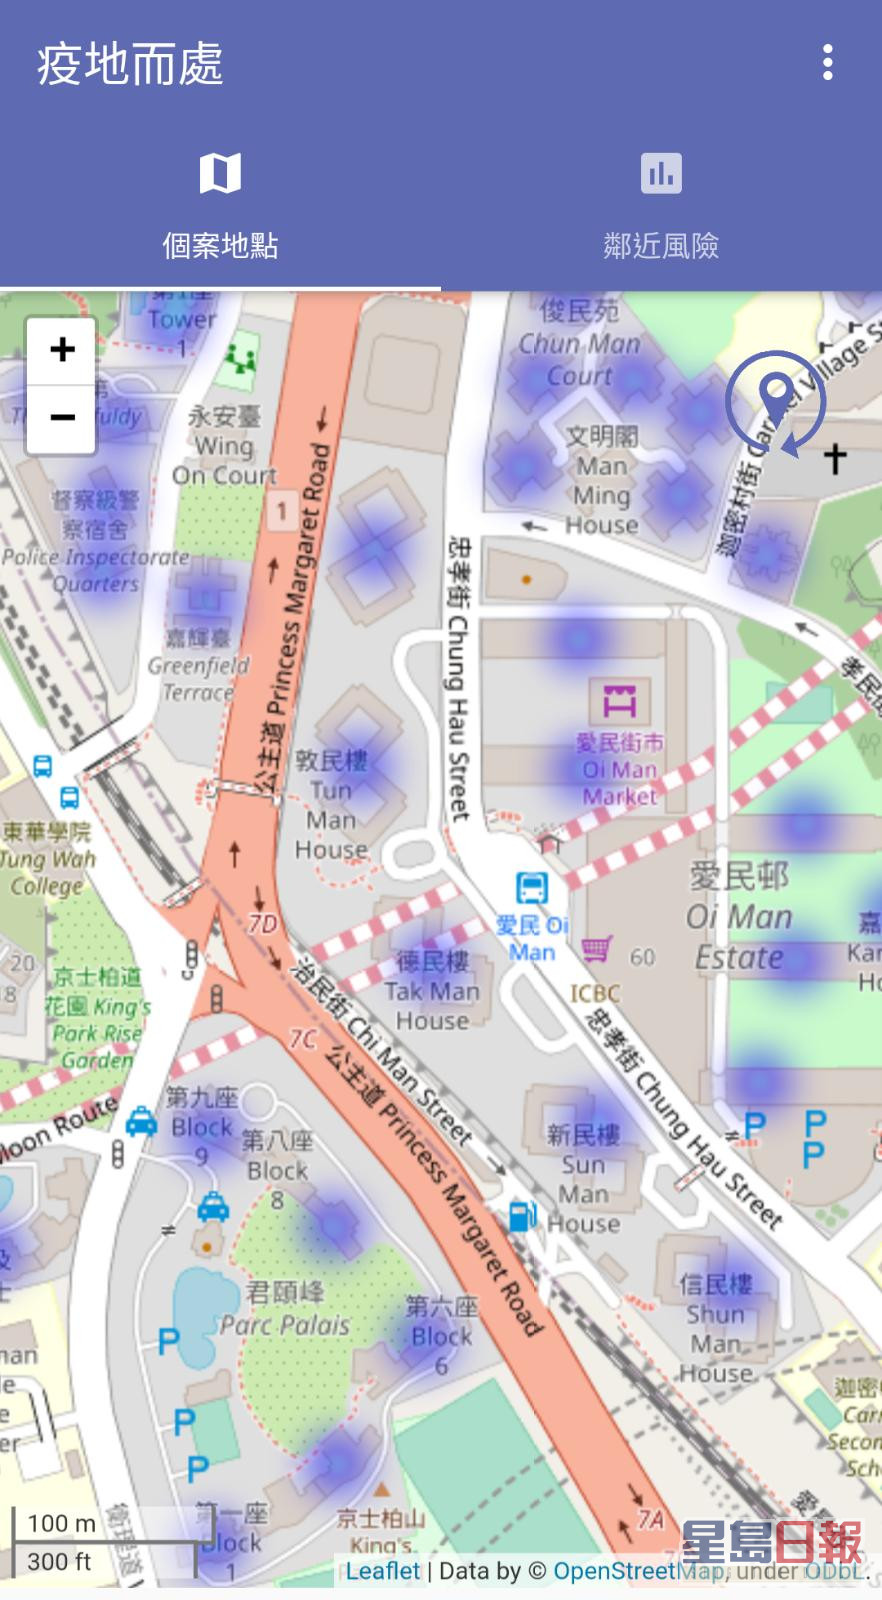 用户打开程序浏览地图，可对个案大厦分布一目了然。